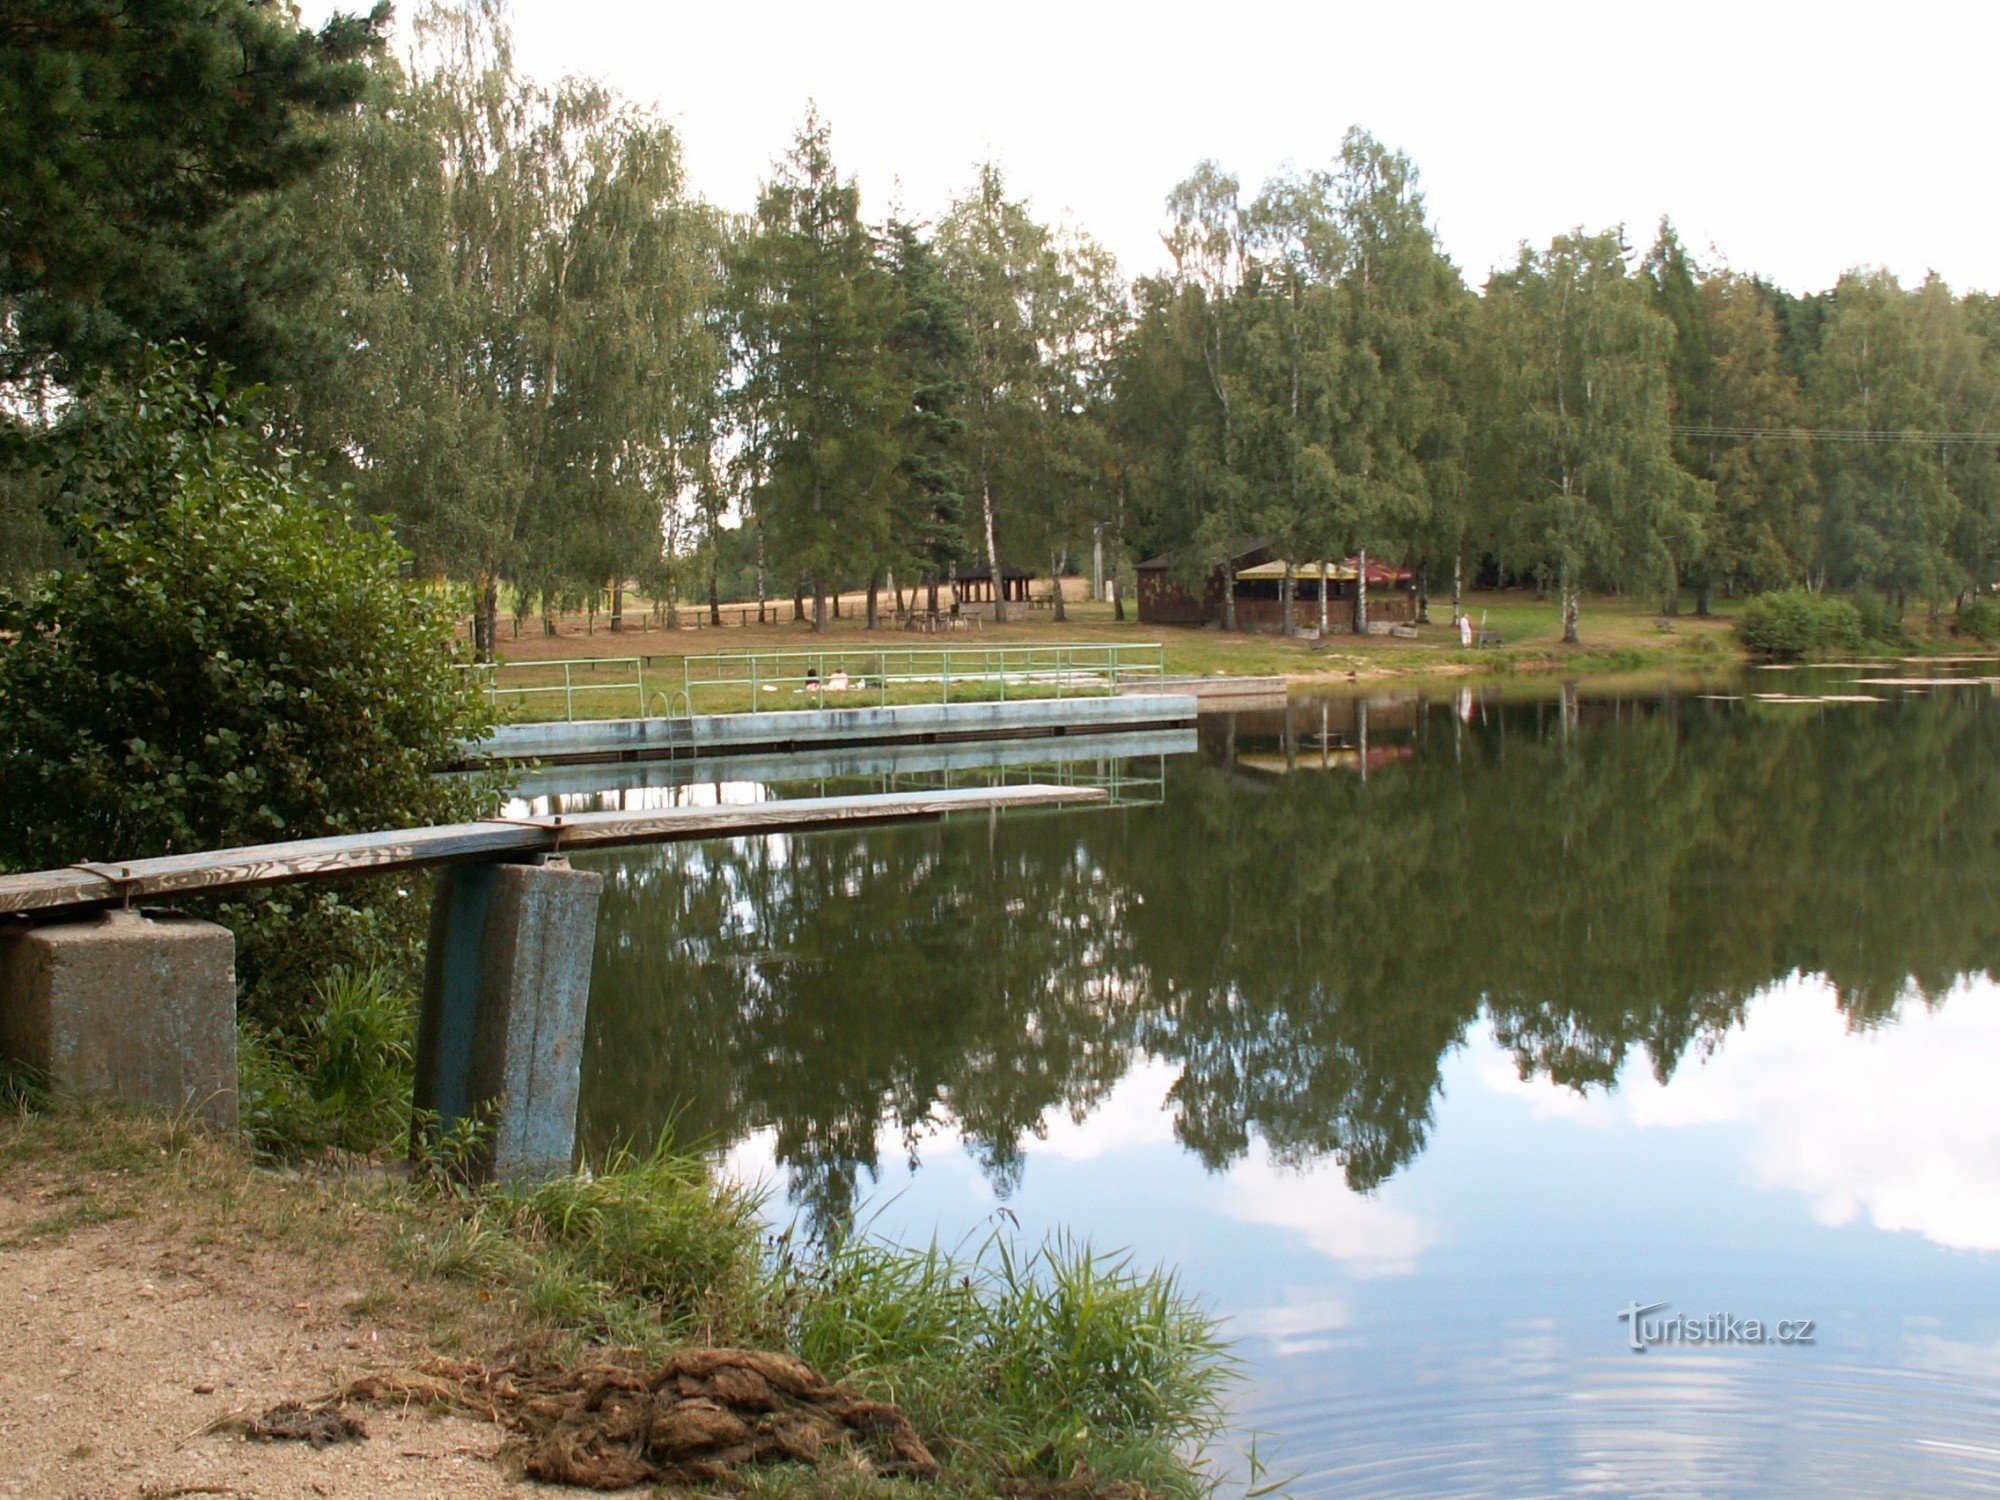 Hồ bơi tự nhiên Sázava